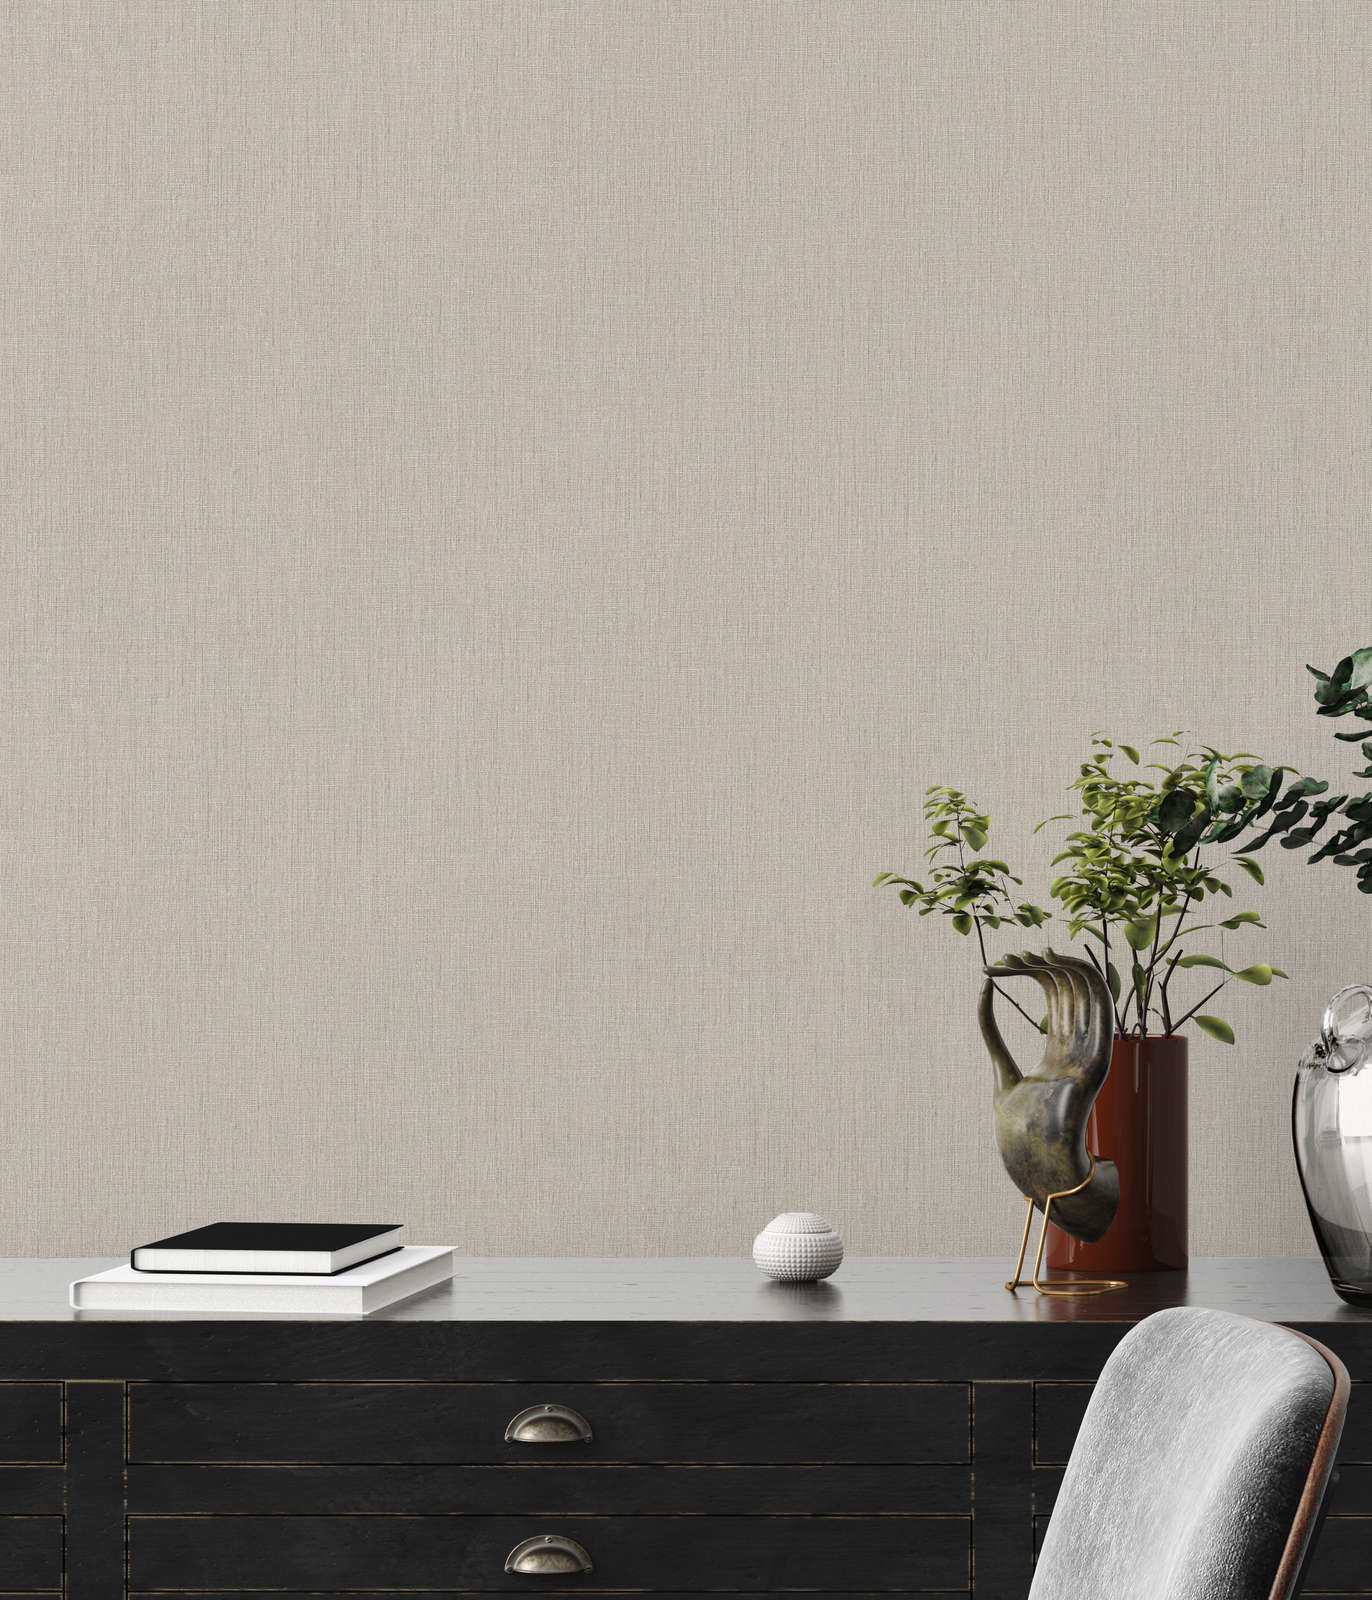             Textured non-woven wallpaper with a matt look - Beige
        